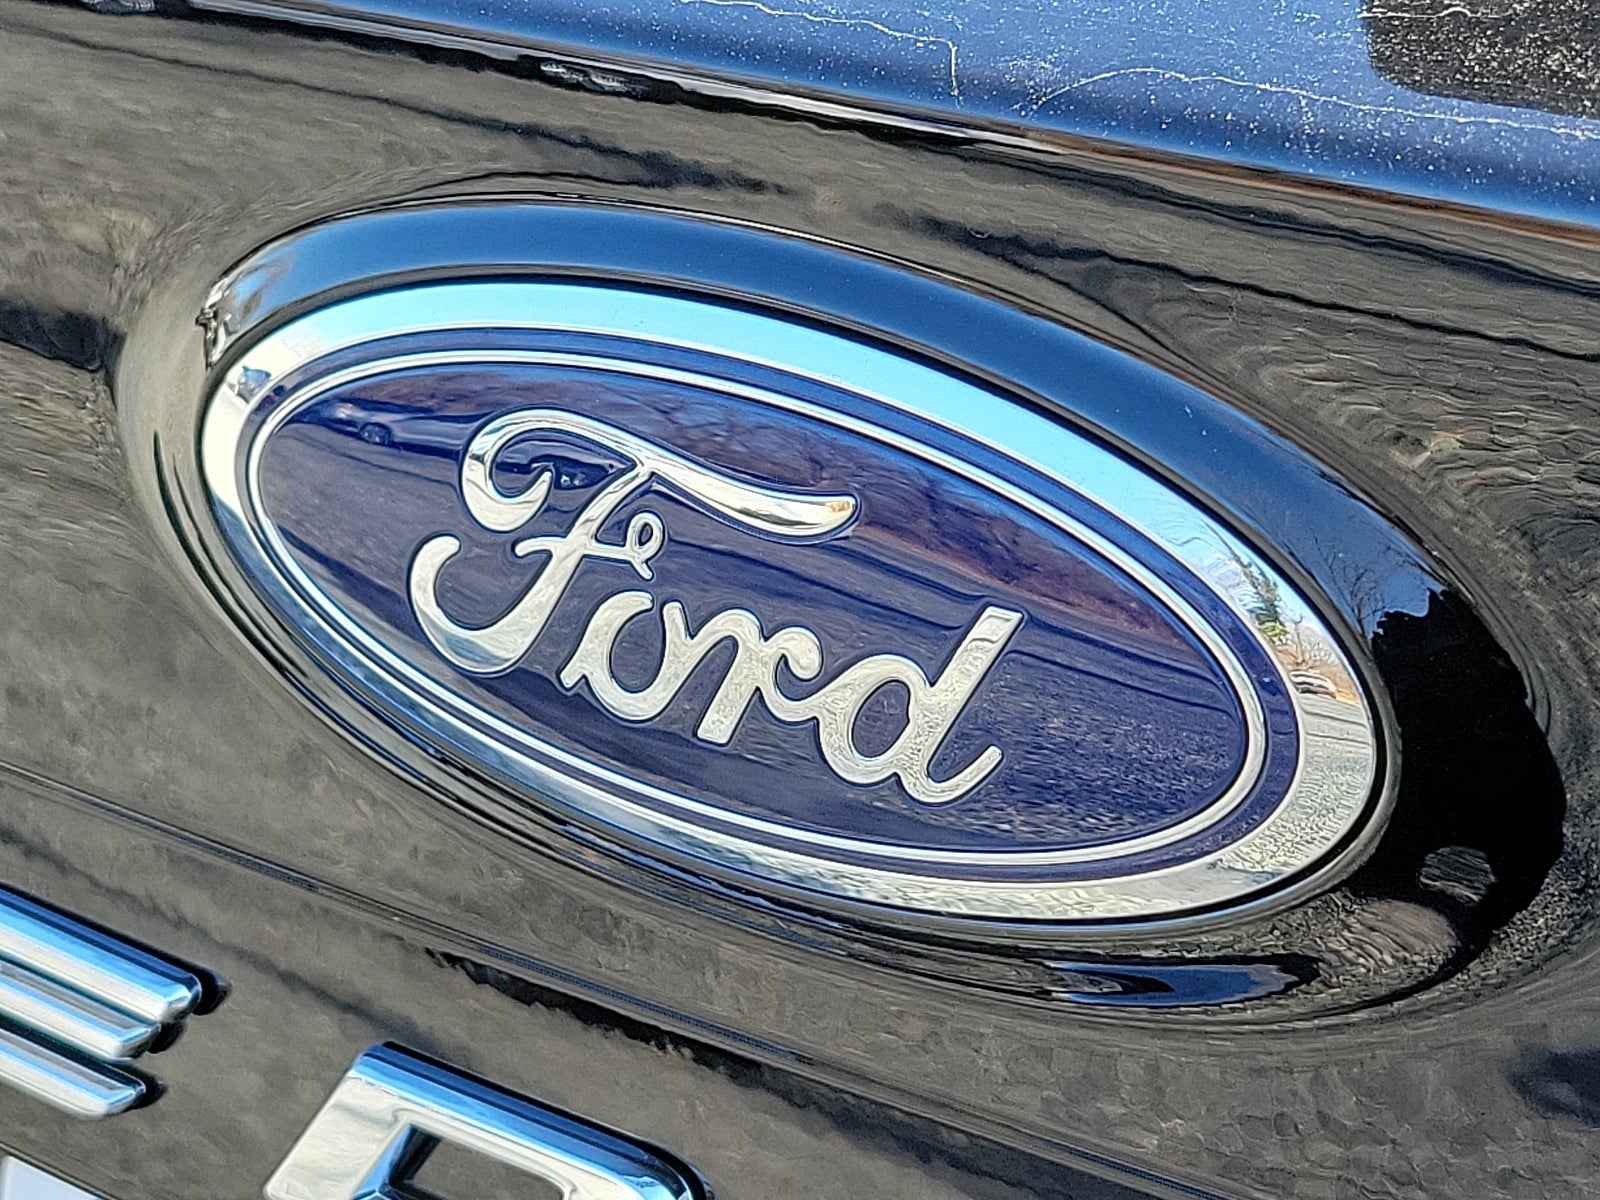 2024 Ford Edge Titanium